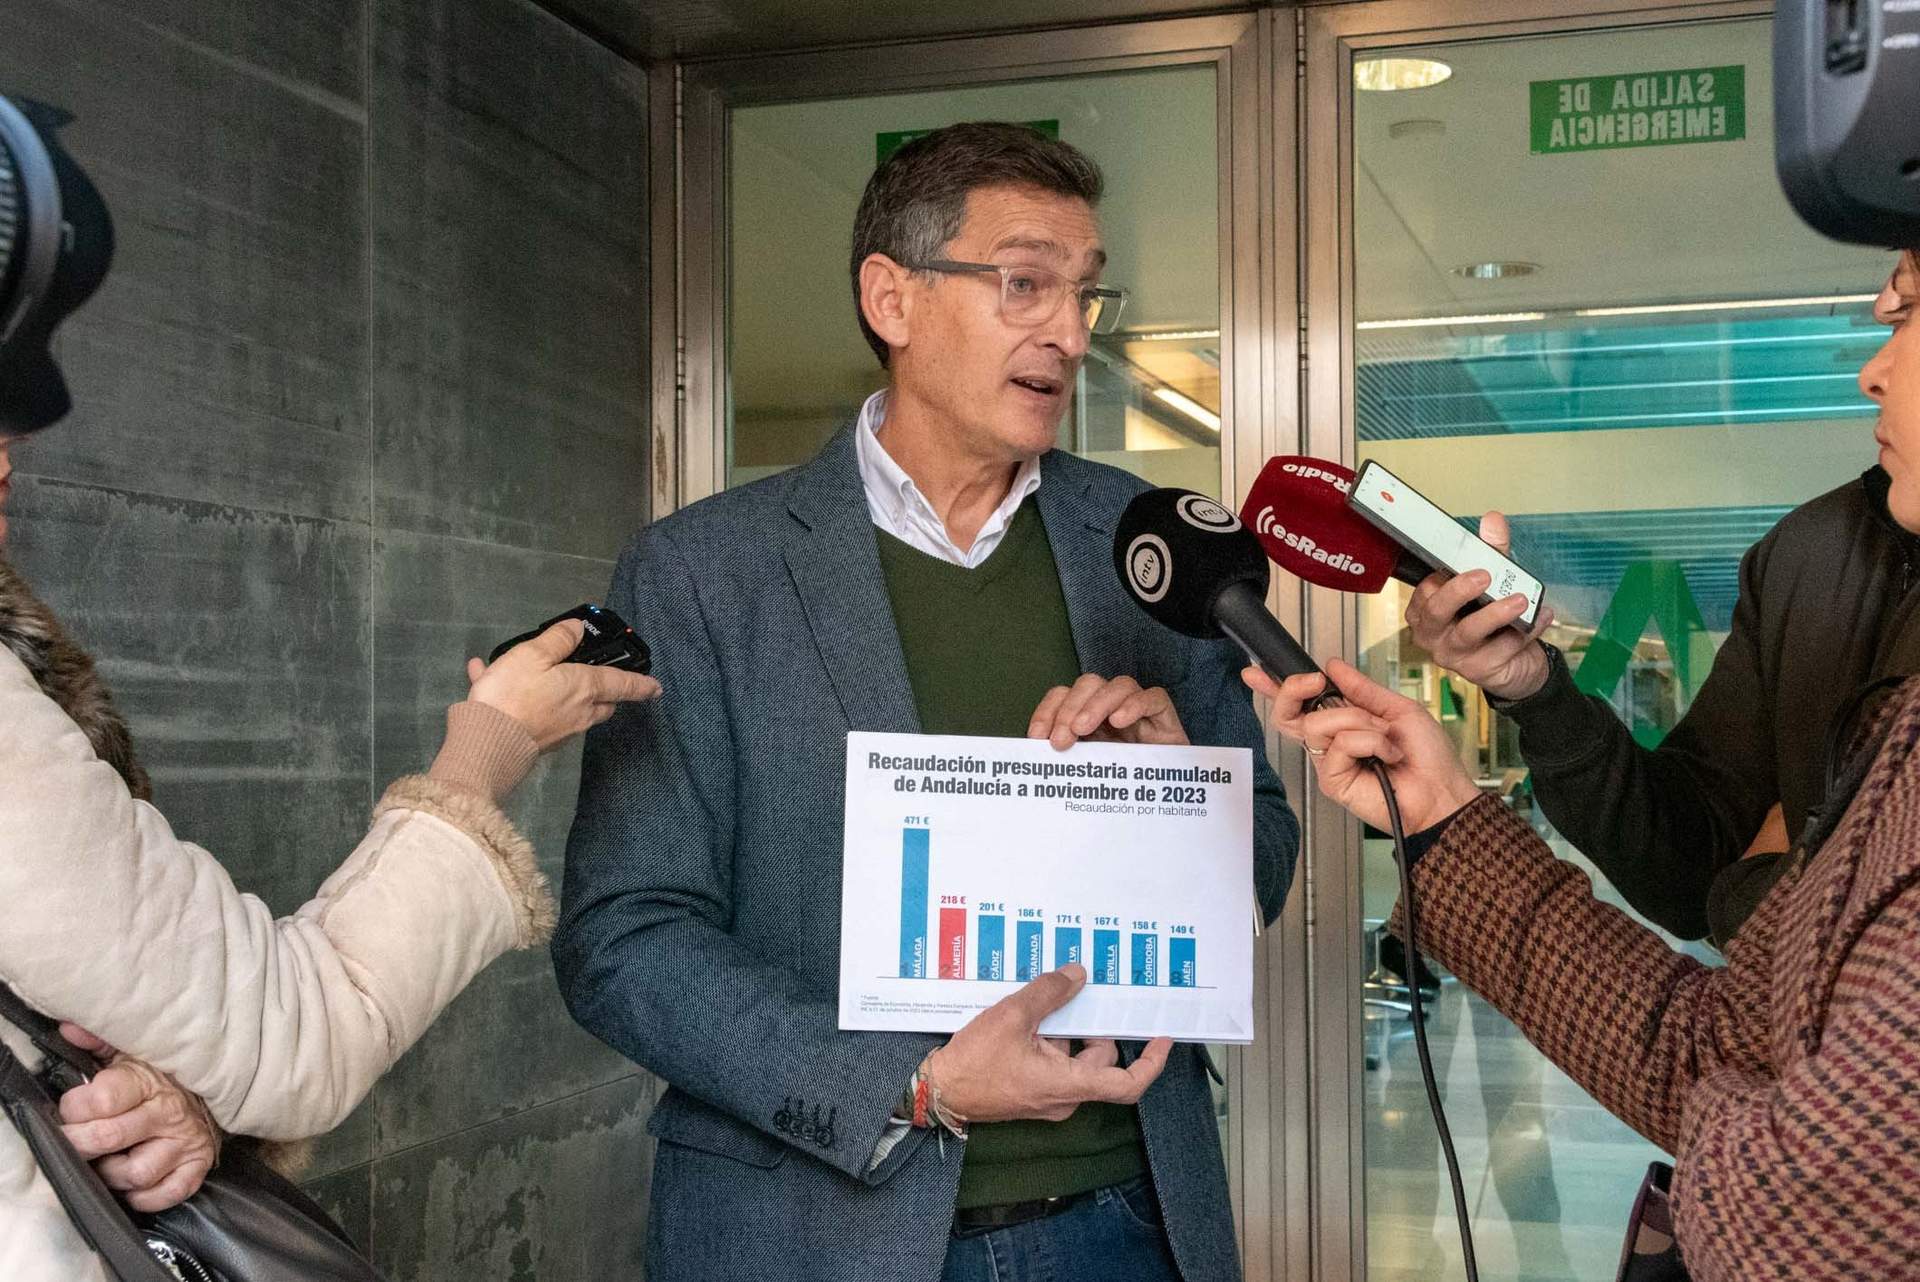 El PSOE pide incluir en el decreto de sequía la conexión entre las desaladoras de Poniente y Almería